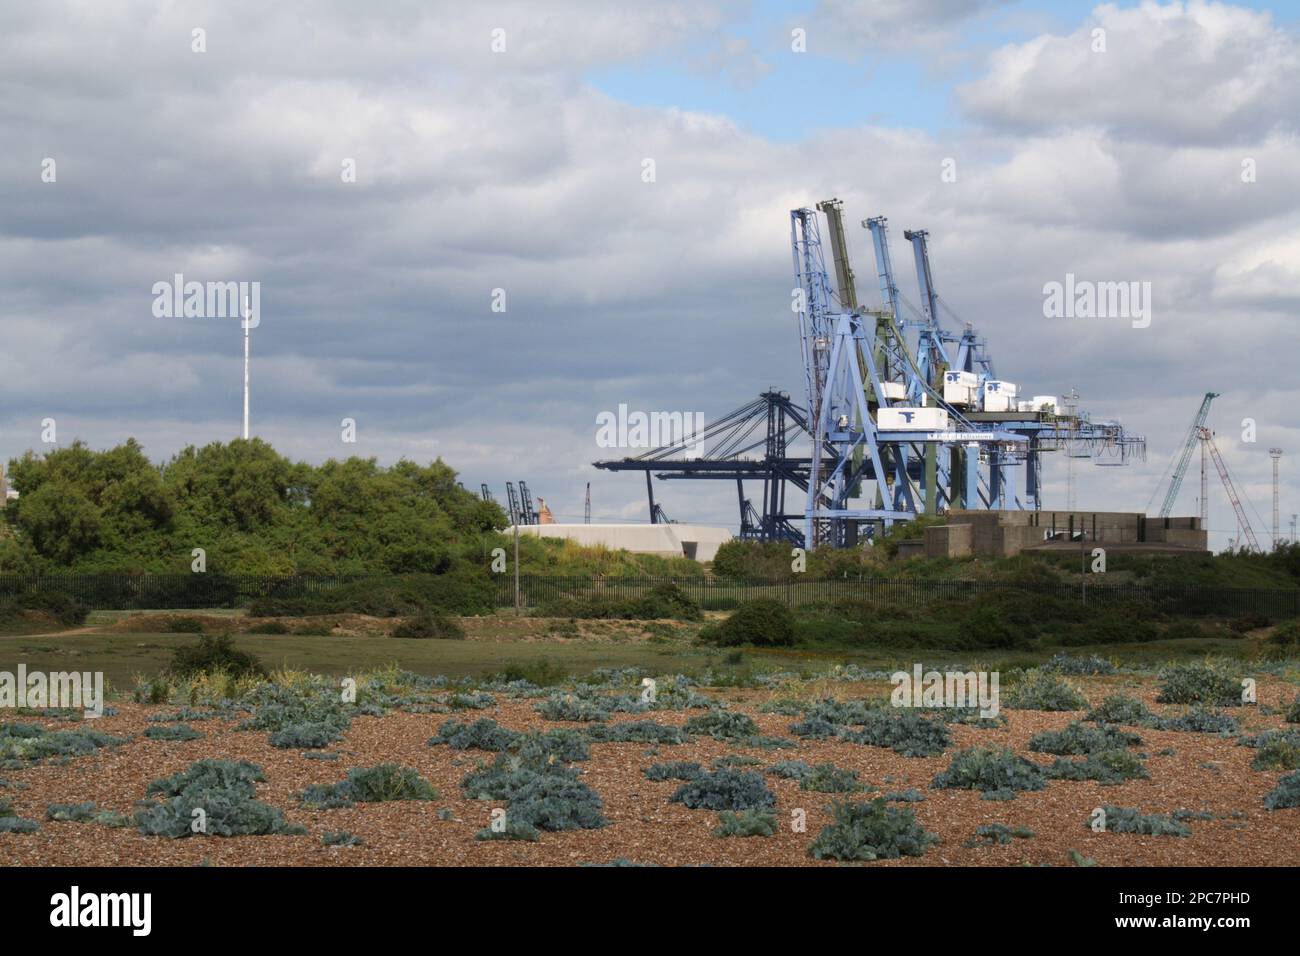 Dock cranes and vegetated shingle habitat, Port of Felixstowe, Landguard Peninsula, Felixstowe, Suffolk, England, United Kingdom Stock Photo